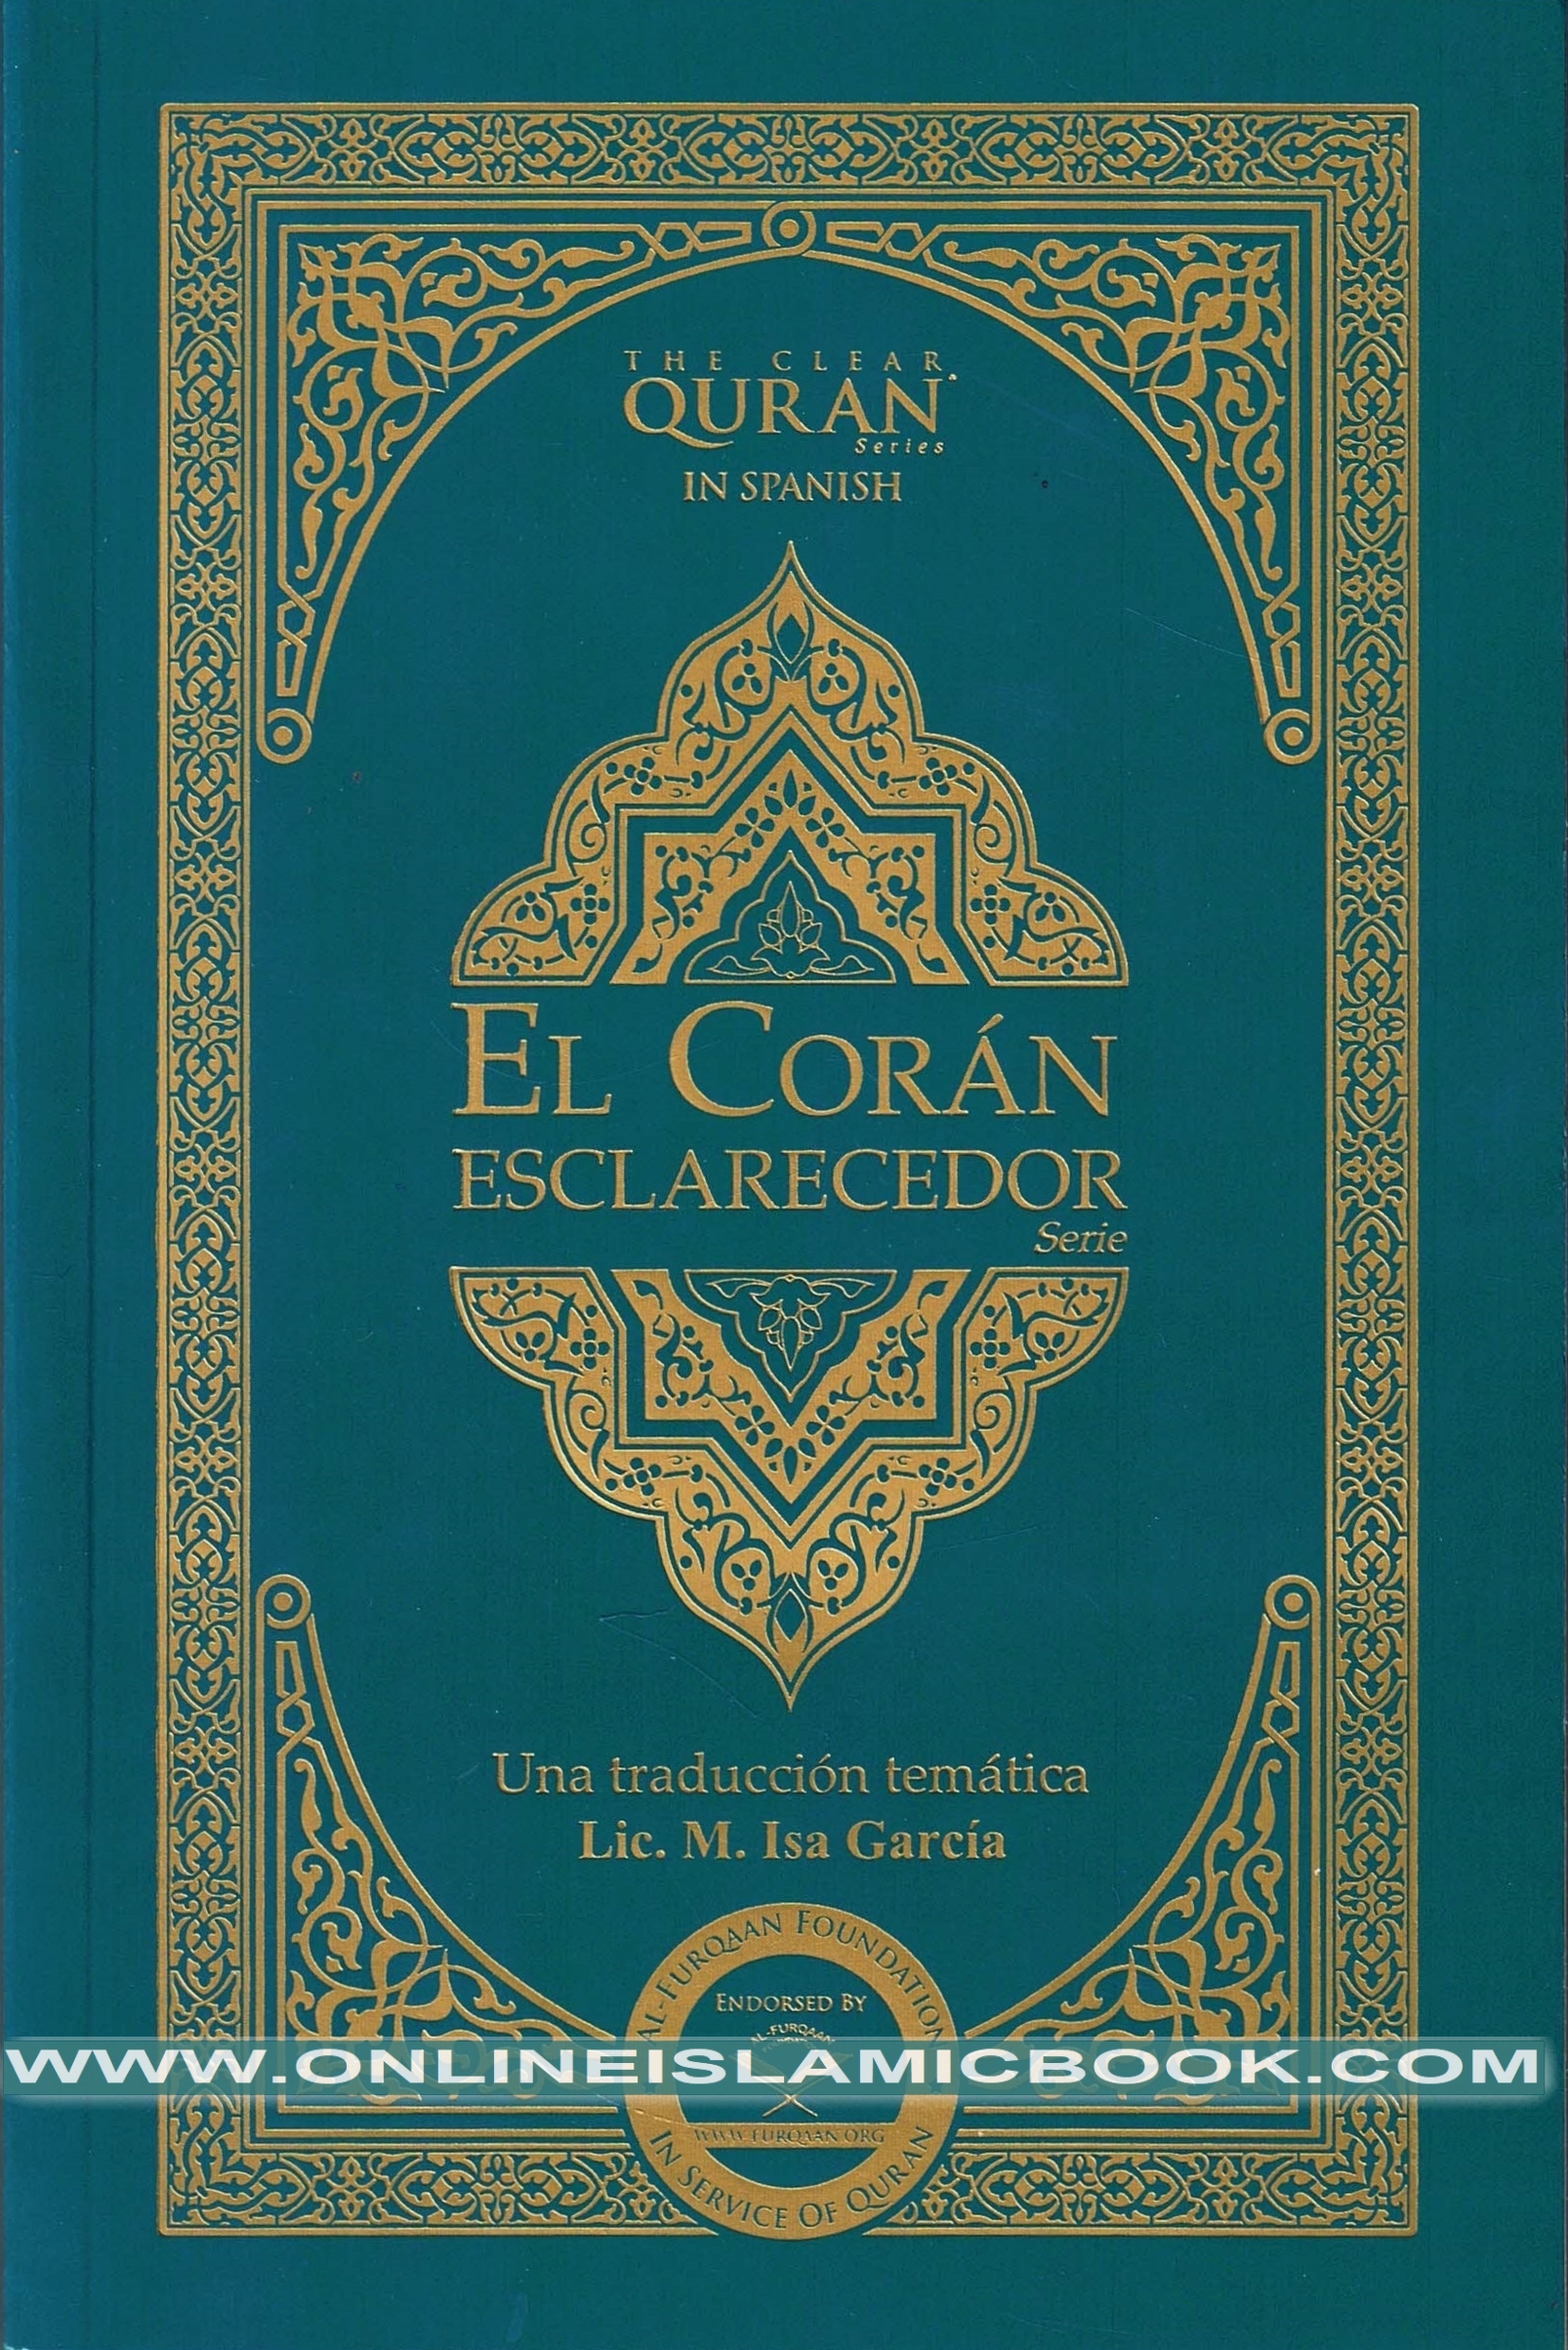 EL CORAN - SBS Librerias